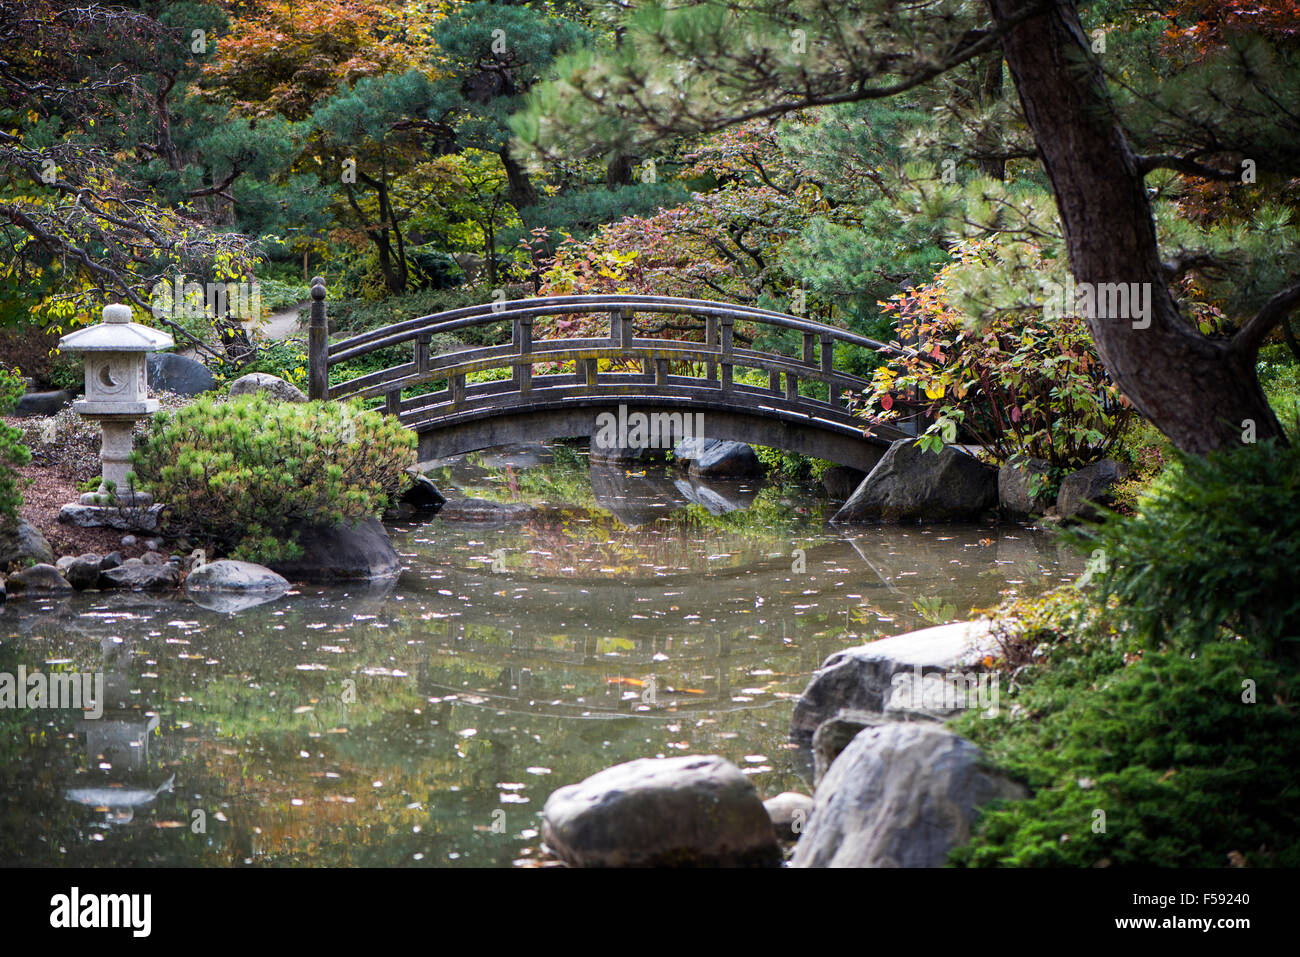 Ponte tranquilla in un giardino asiatico con i colori dell'autunno e acque calme. Un luogo tranquillo per raccogliere i vostri pensieri. Foto Stock